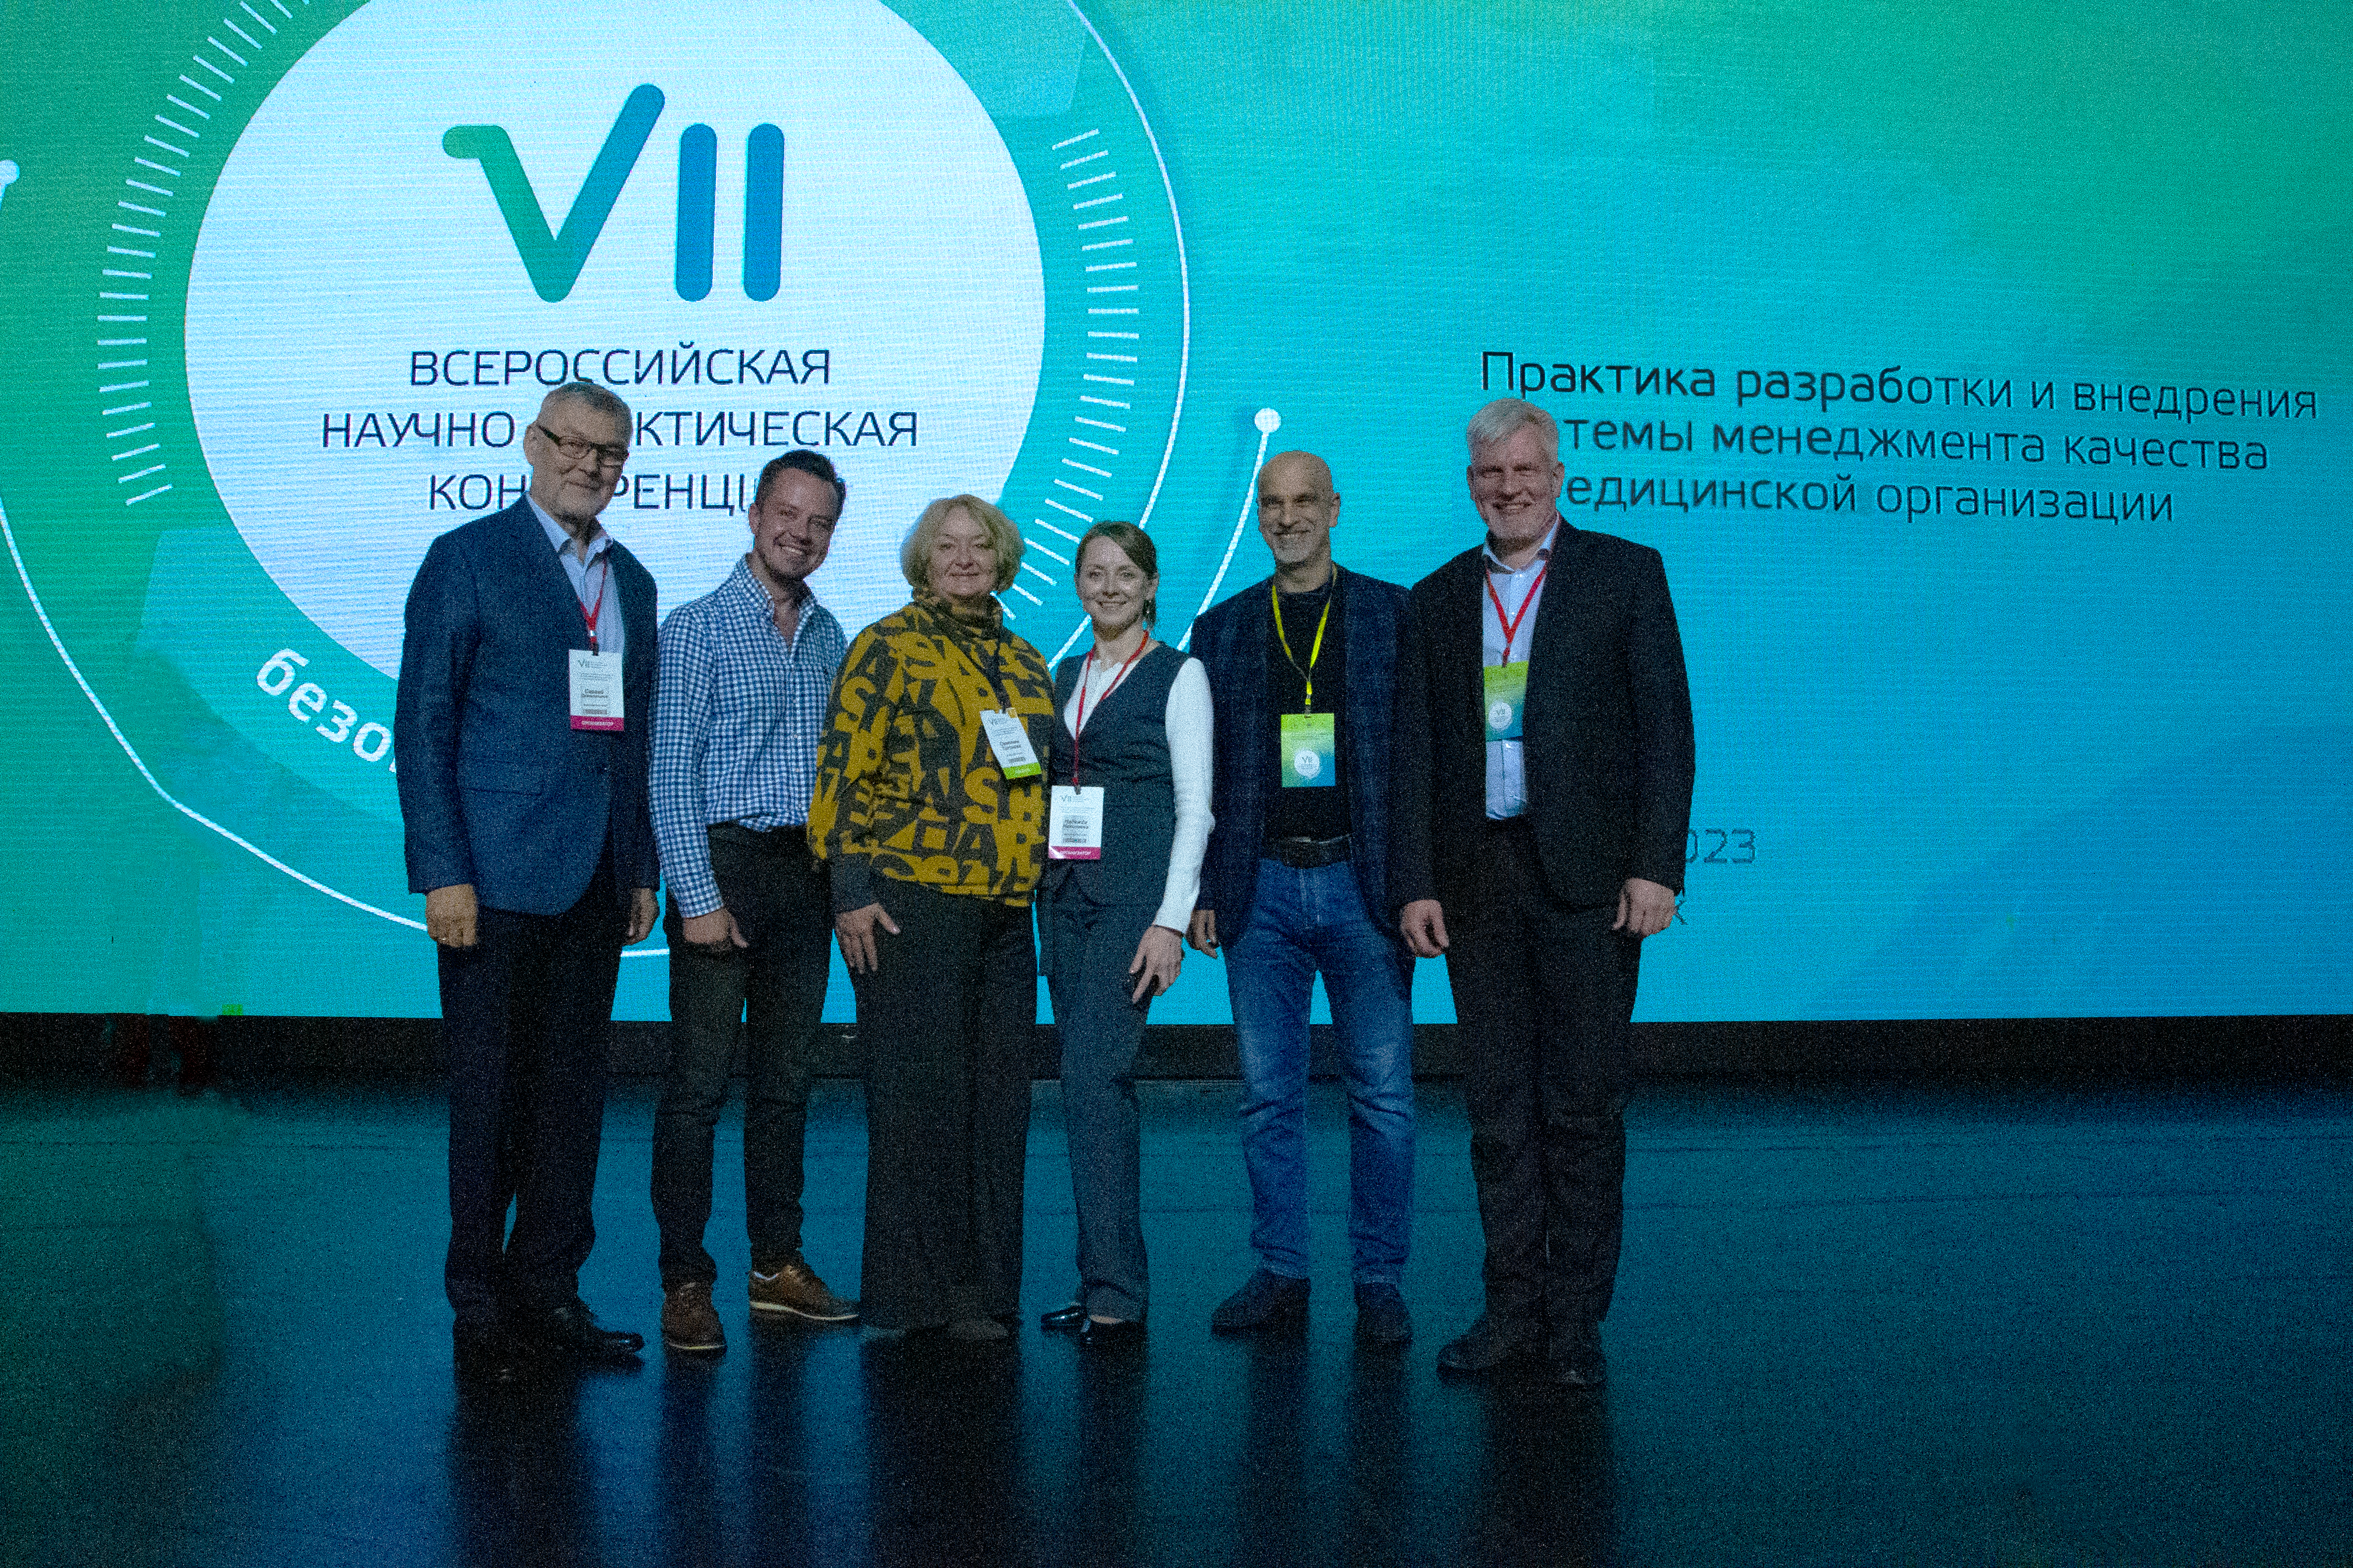 VII всероссийская научно-практическая конференция с международным участием «Практика разработки и внедрения системы менеджмента качества в медицинской организации»